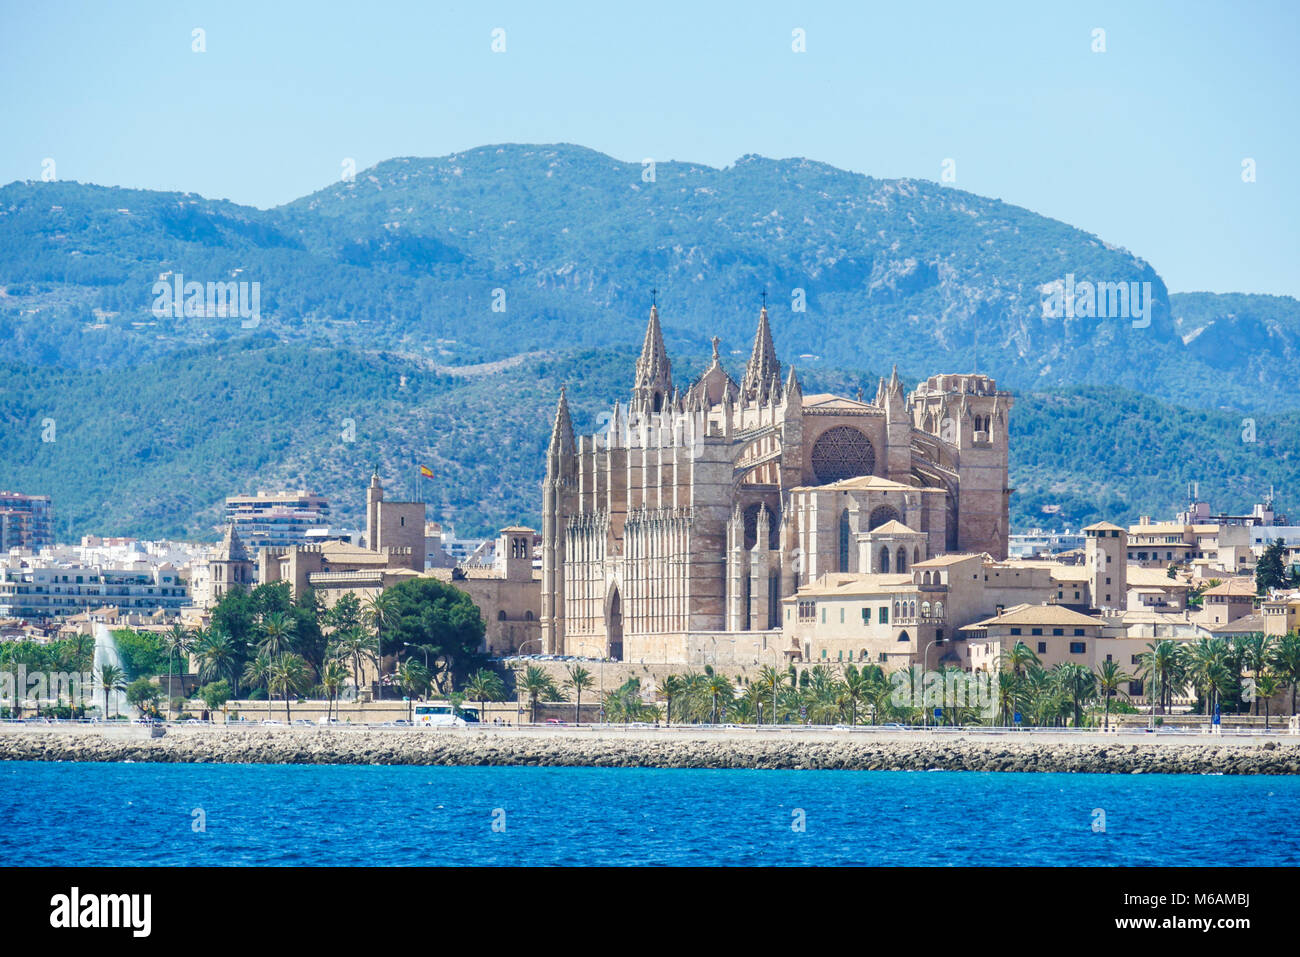 Palma de Mallorca, Espagne. La Seu, formulaire d'affichage de la mer. Cathédrale catholique de style gothique médiéval célèbre dans la capitale de l'île Banque D'Images